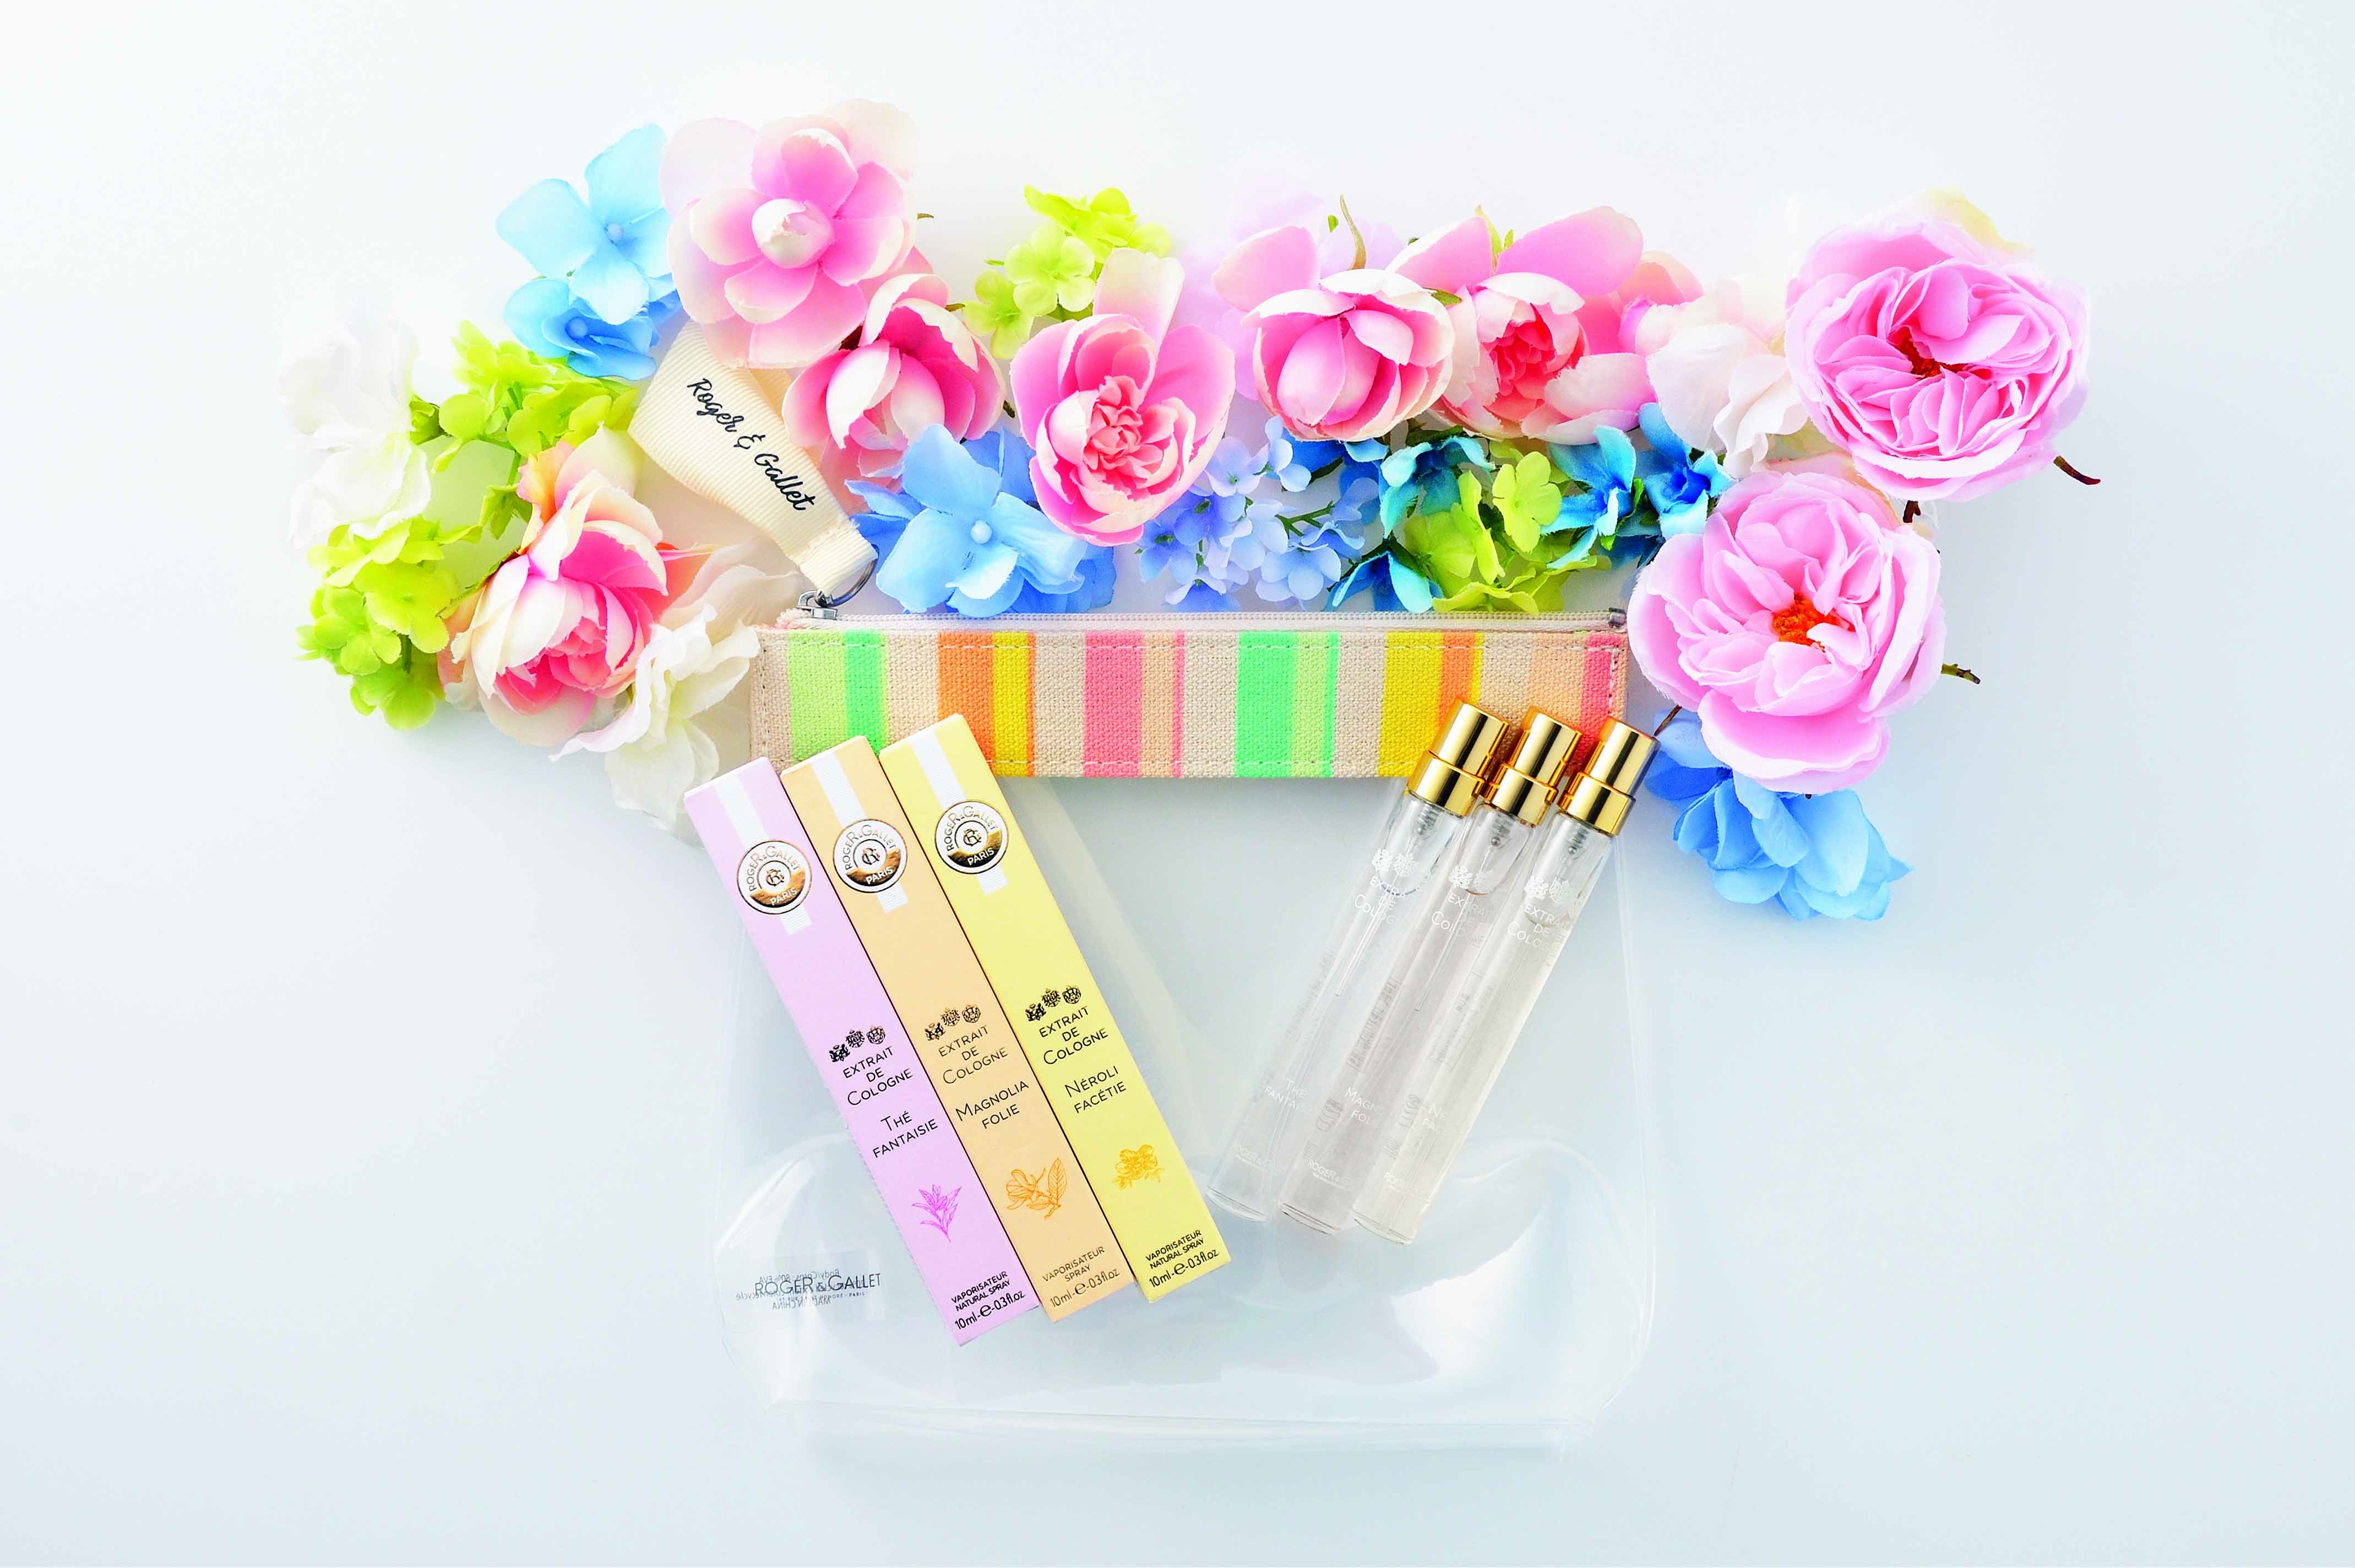 ロジェ ガレ から 幸せあふれる香りの ベストセラーセット が登場 日本ロレアル株式会社のプレスリリース